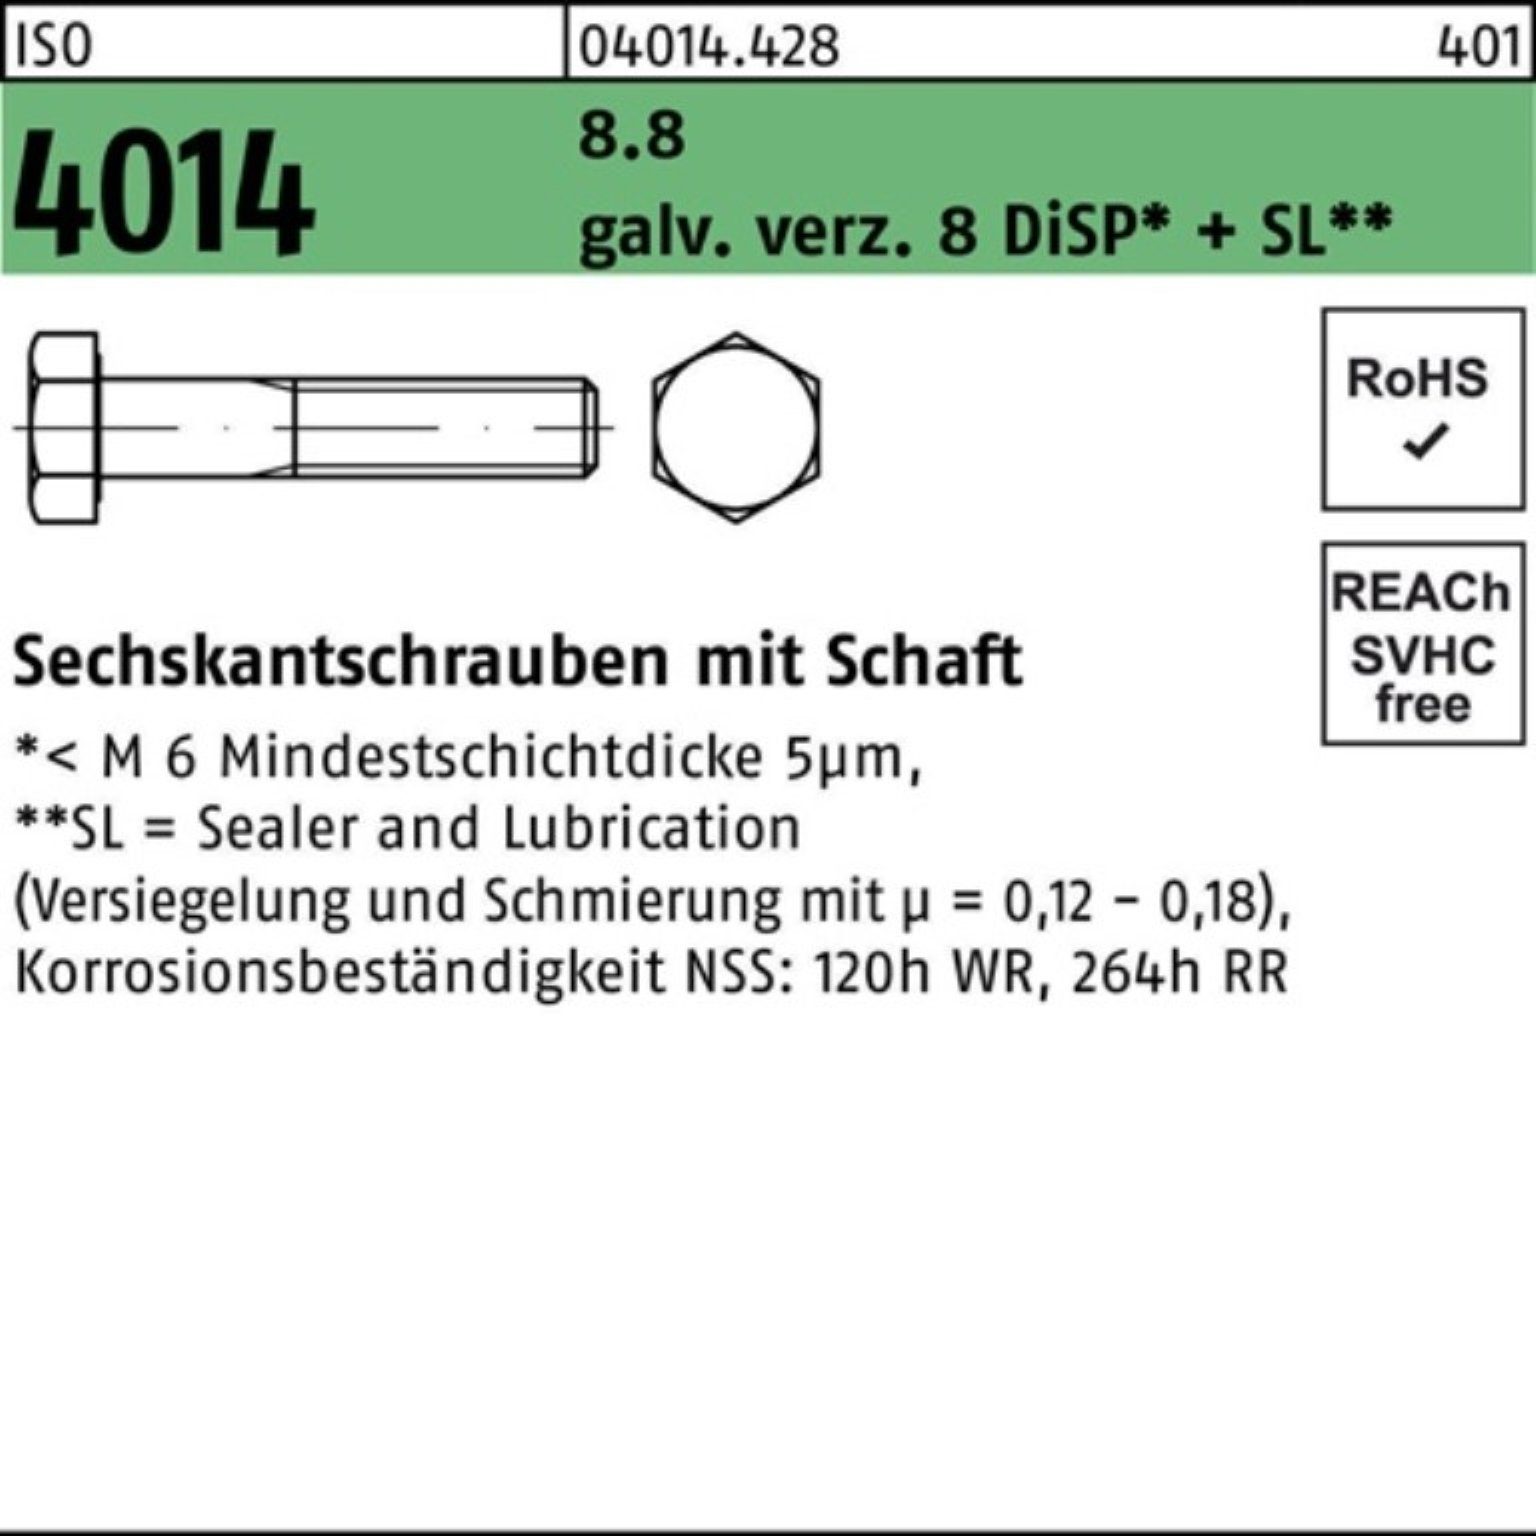 Bufab Sechskantschraube 100er Schaft 4014 M8x95 8.8 8 galv.verz. Sechskantschraube Di ISO Pack